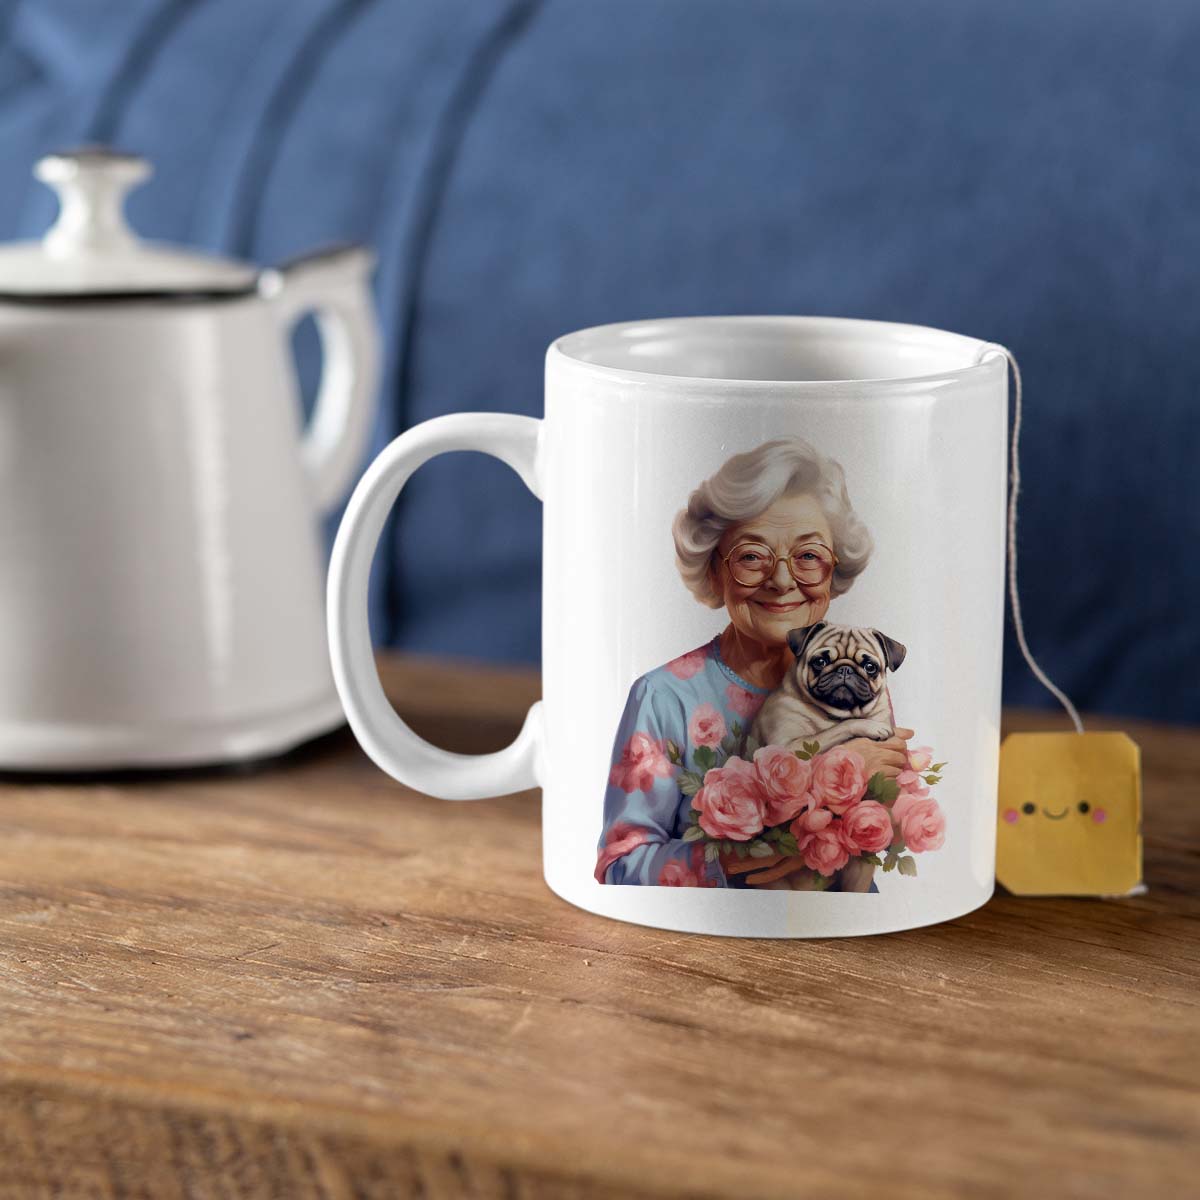 Custom Dog Mom Mug, Grandma and Pug Dog Love Ceramic Mug, Dog Owner Gift, Dog Lover Mug, Gift For Dog Mom, Gift For Dog Owner, Dog Coffee Mugs, Dog Grandma Coffee Mug, Mother's Day Gift